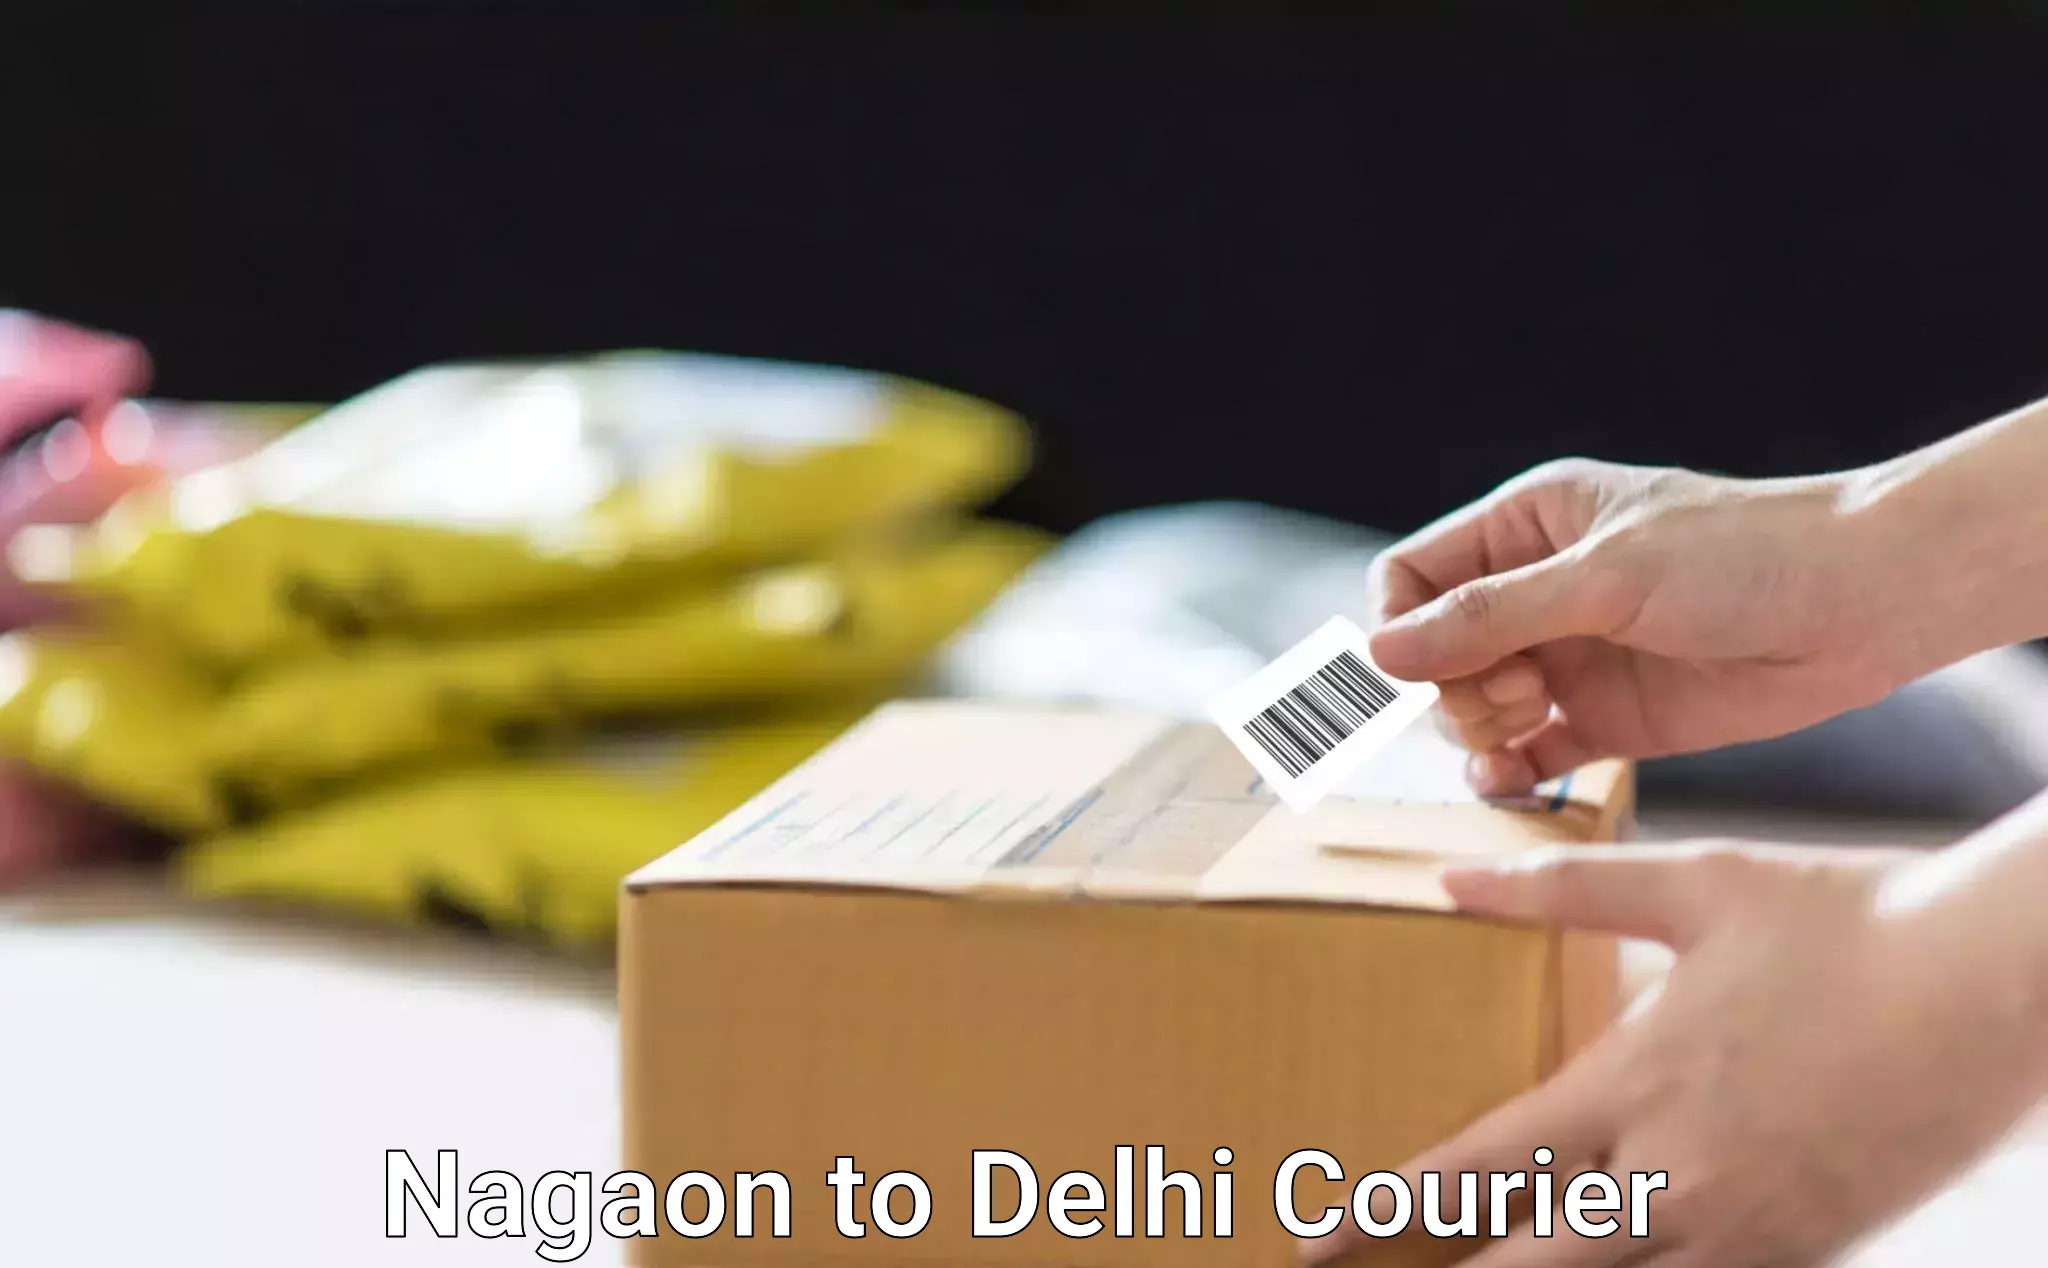 Express shipping Nagaon to IIT Delhi